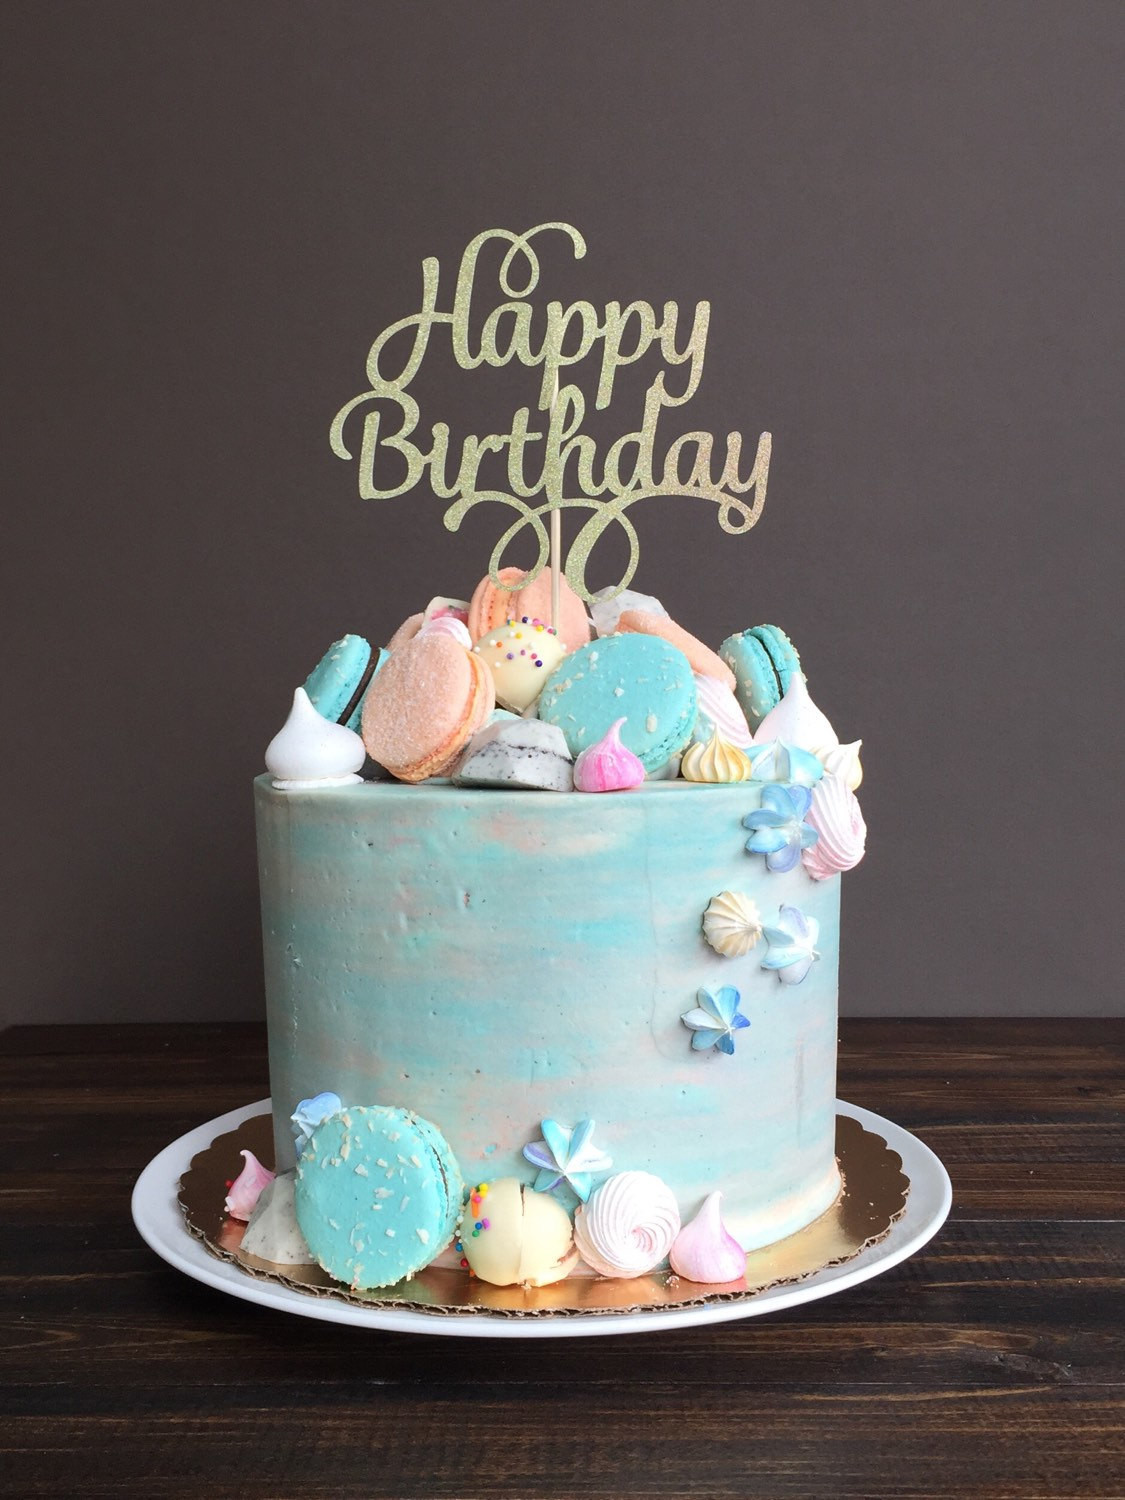 Cake Happy Birthday
 Cake topper Happy Birthday cake topper birthday cake